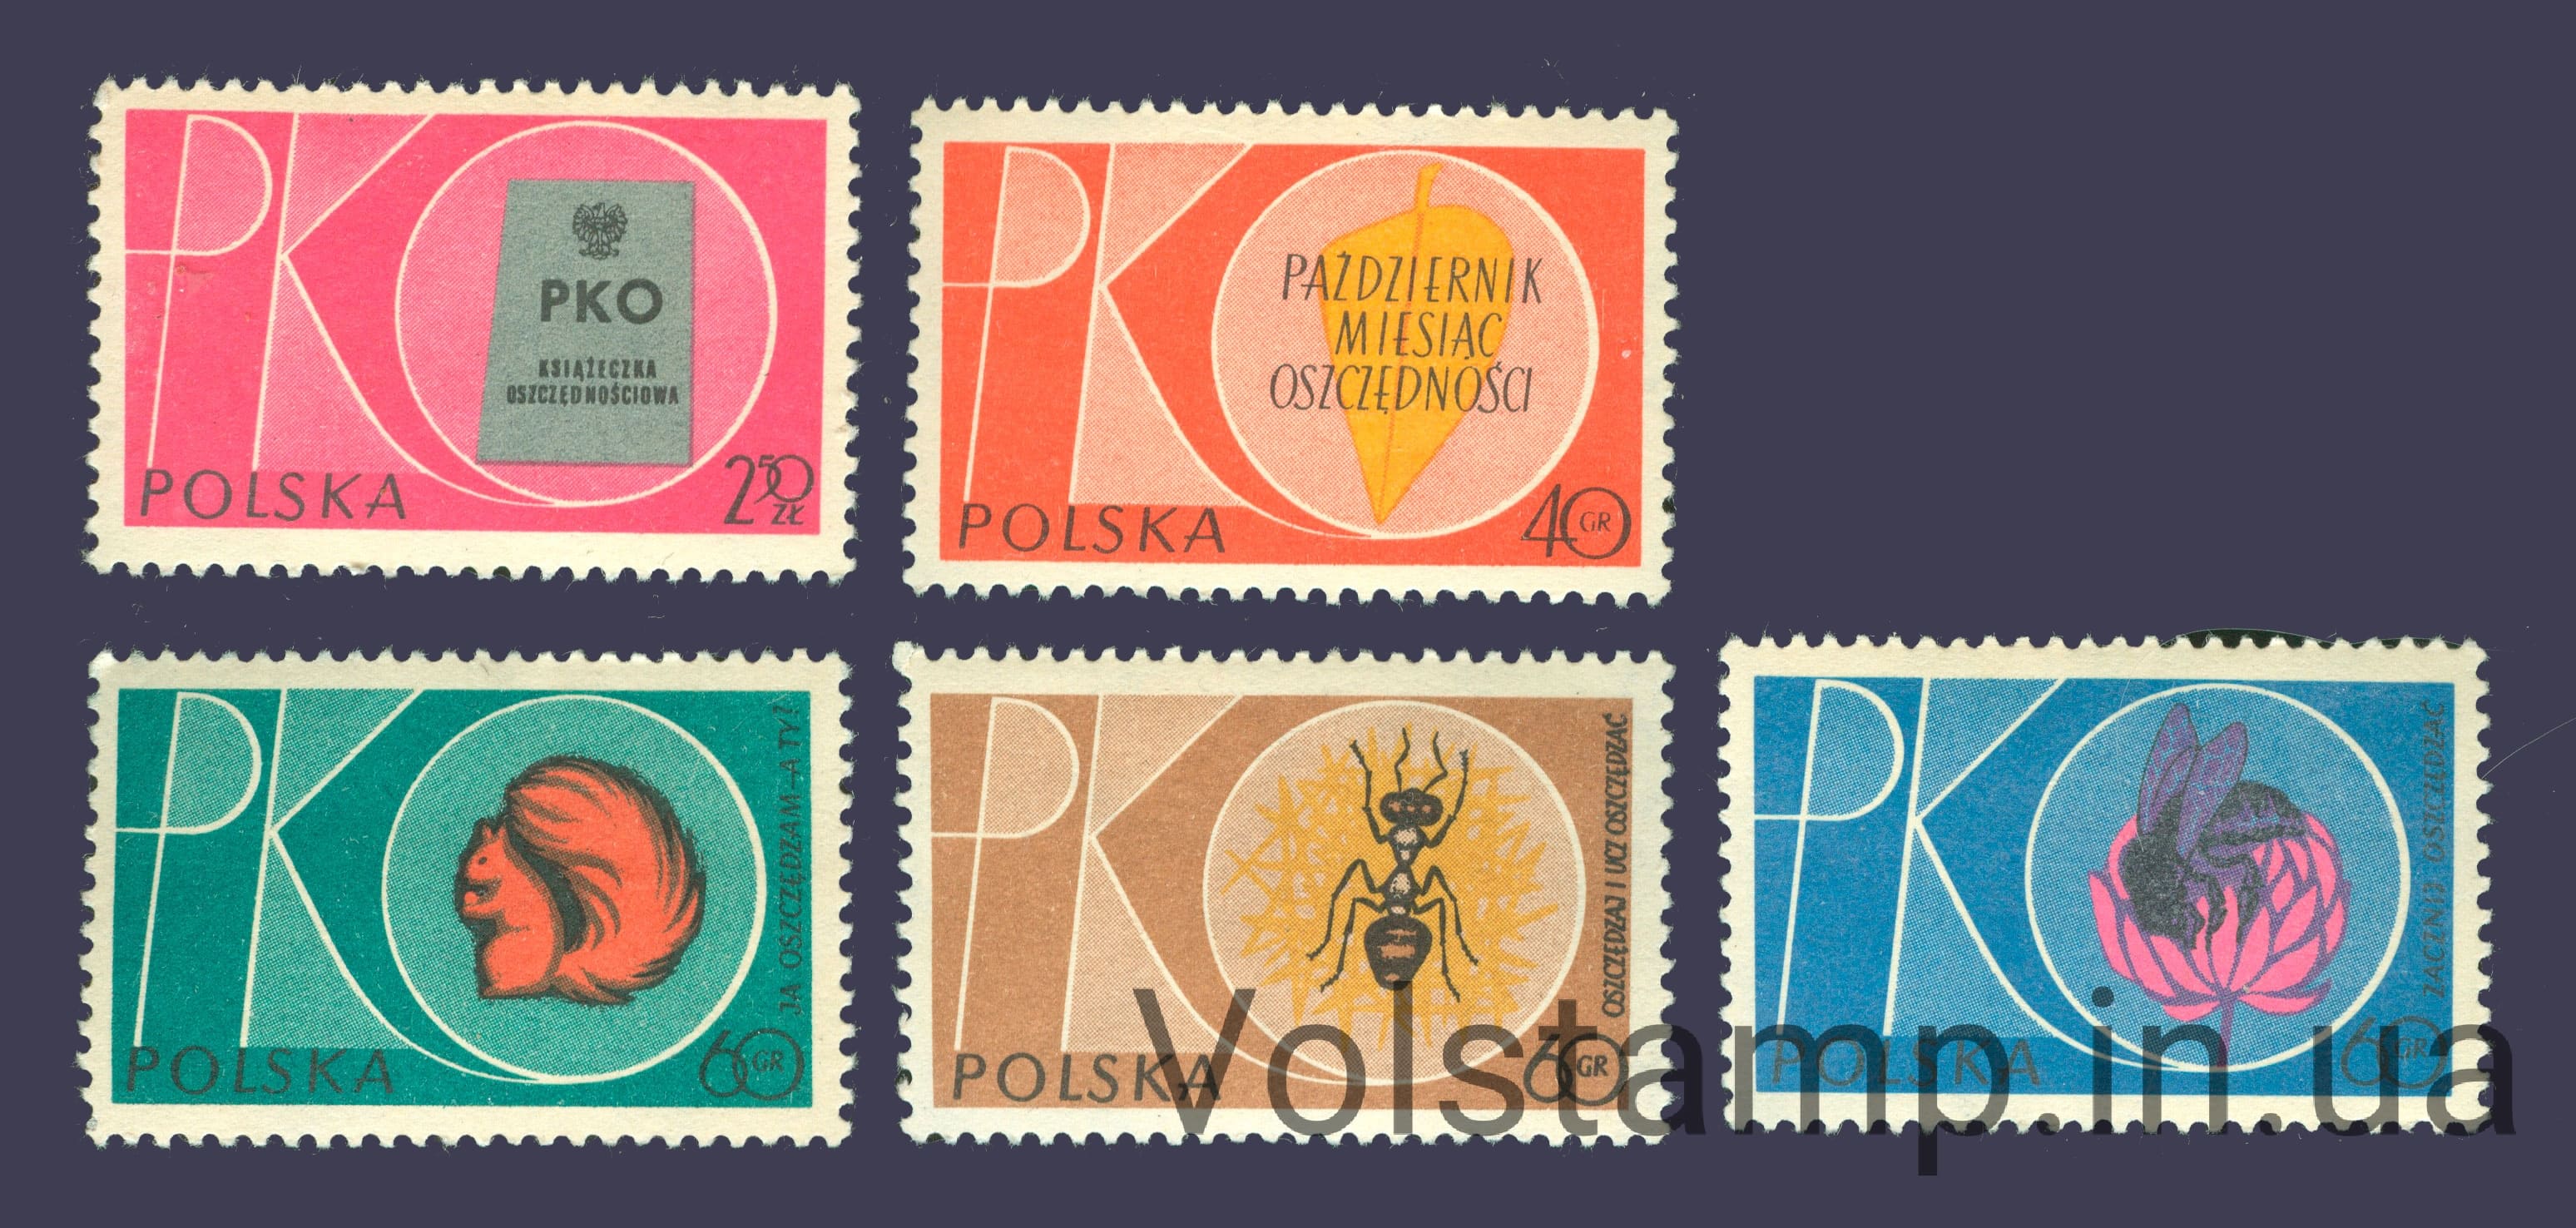 1961 Польша Серия марок (Насекомые, пчелы, белка, фауна) MNH №1261-1265